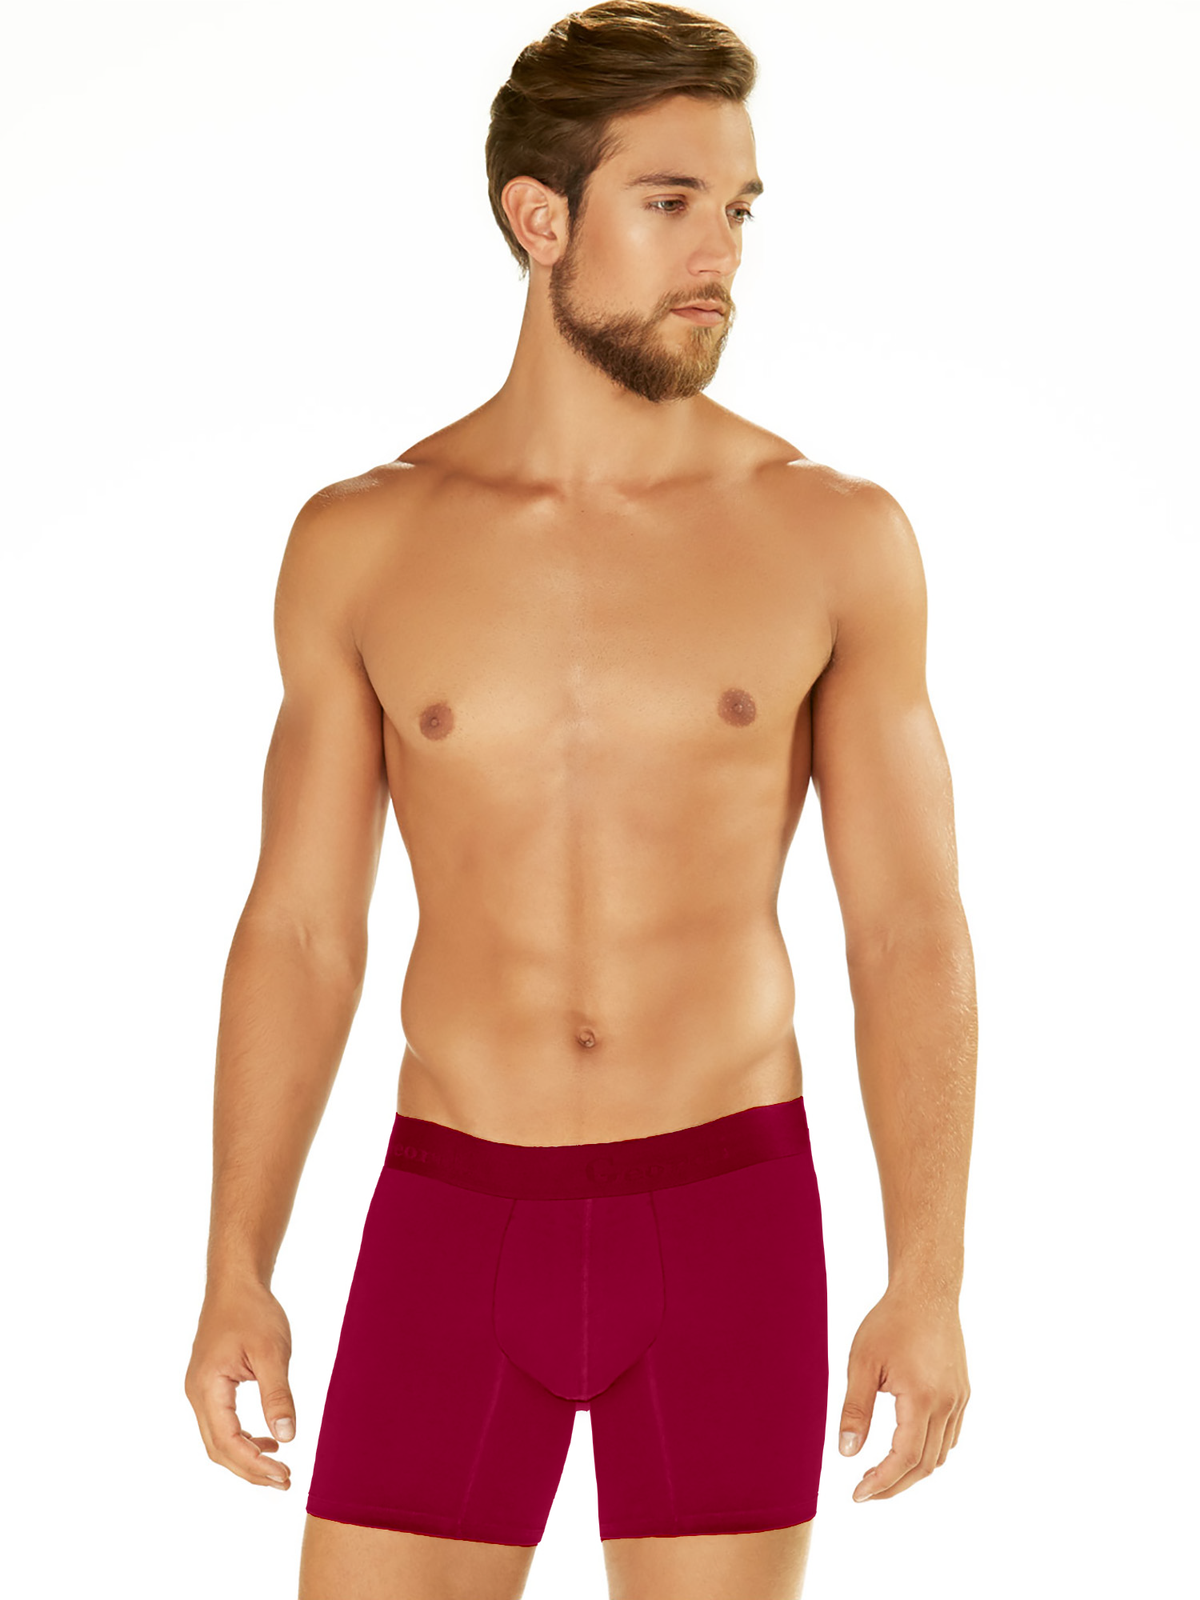 Geordi 5172 Boxer Briefs underwear for men